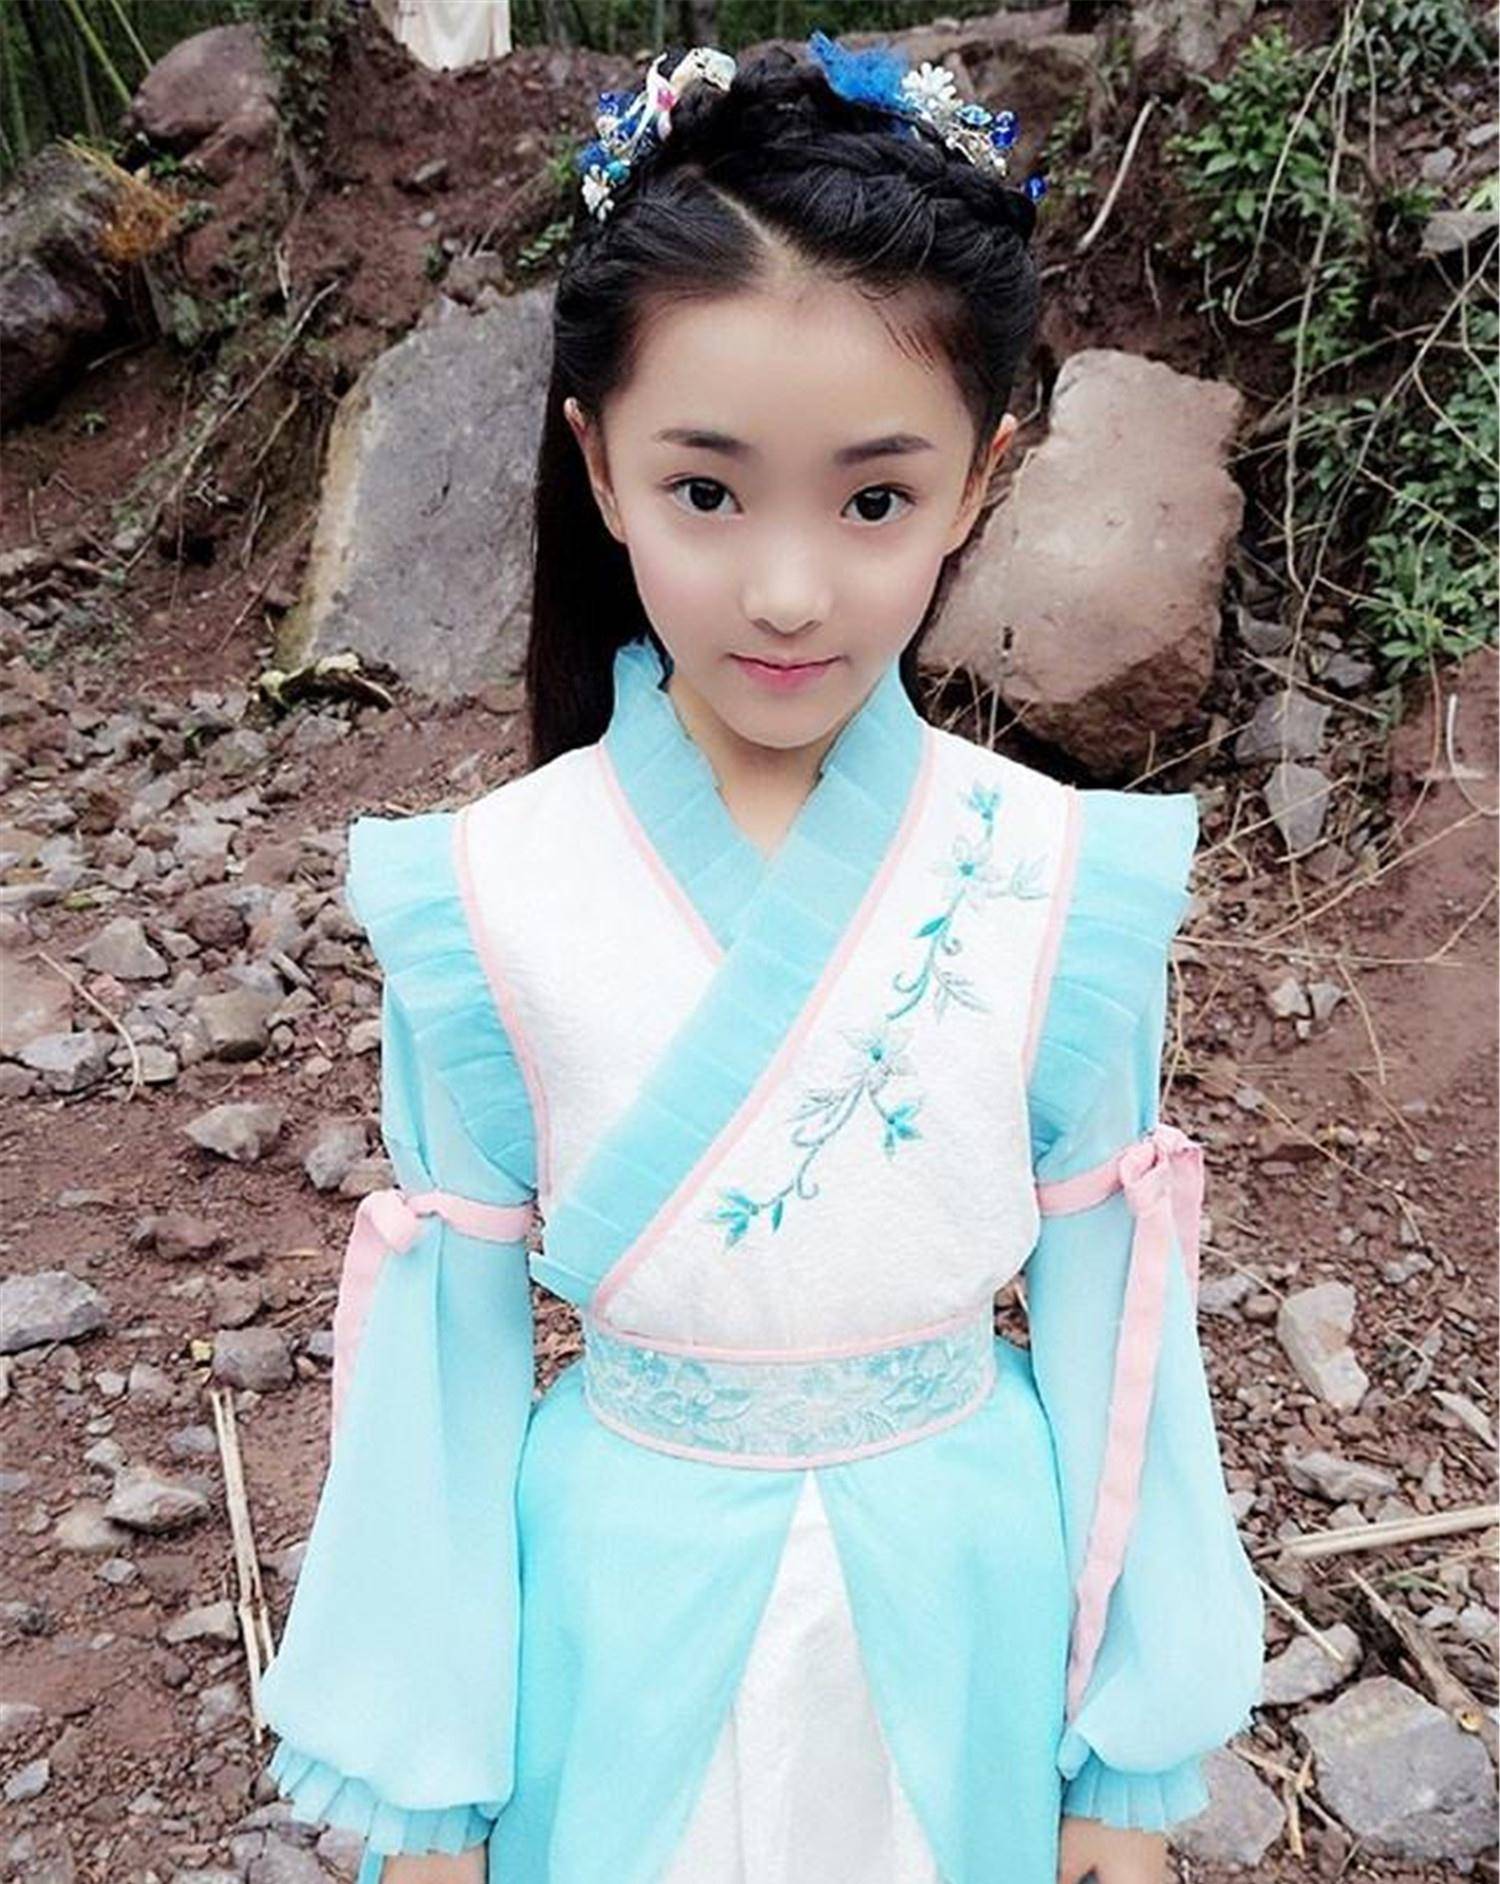 陶艺熙10岁那年,在《小戏曲骨:白蛇传》中以白素贞的角色在互联网上